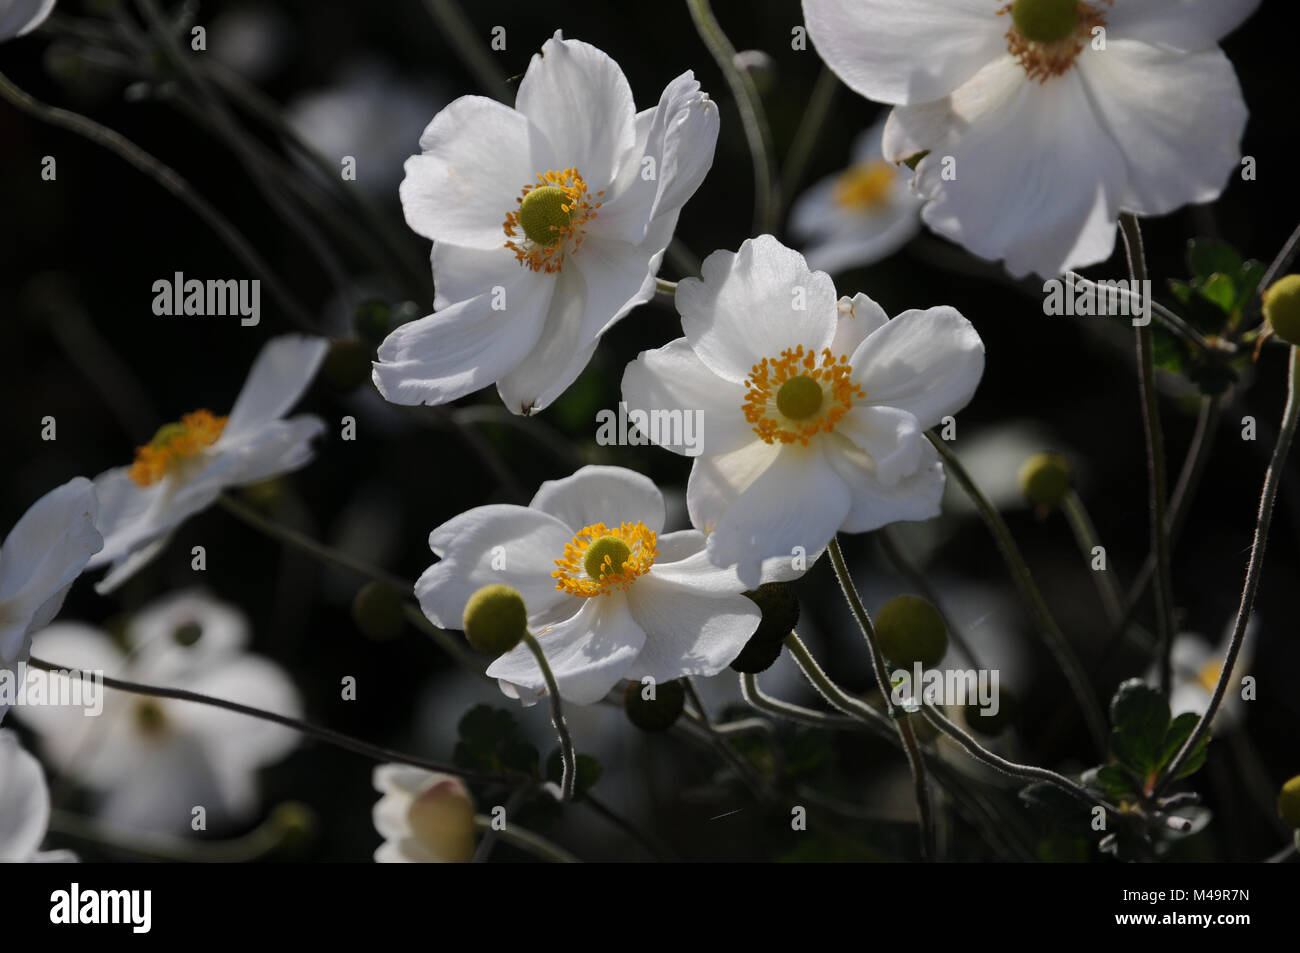 Anemone japonica Honorine Jobert, Japanese anemone Stock Photo